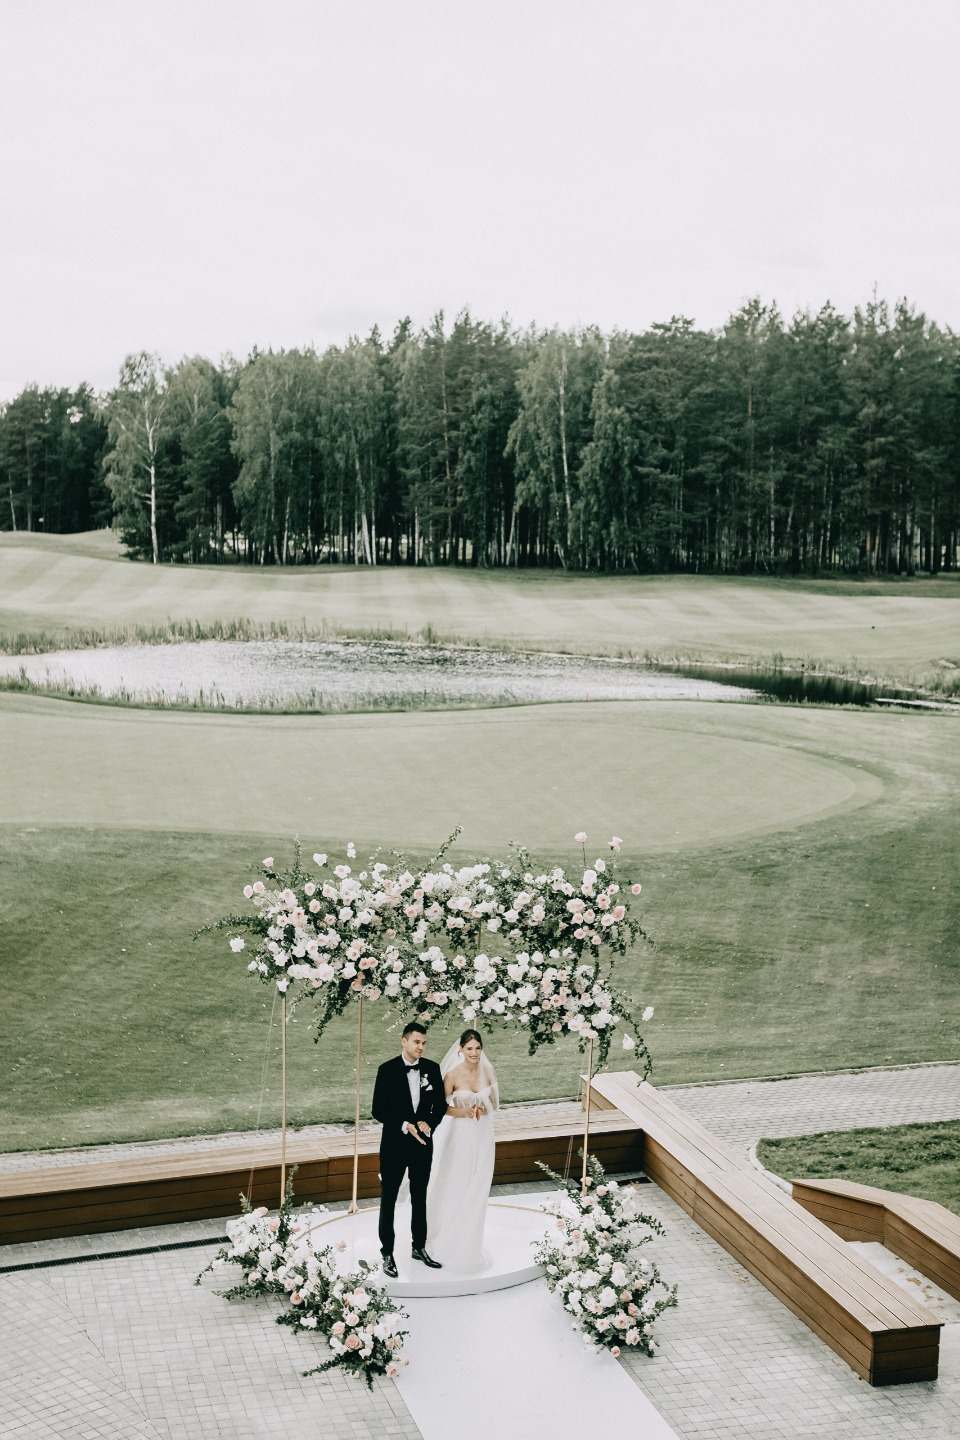 Светлая романтика: классическая свадьба в гольф-клубе